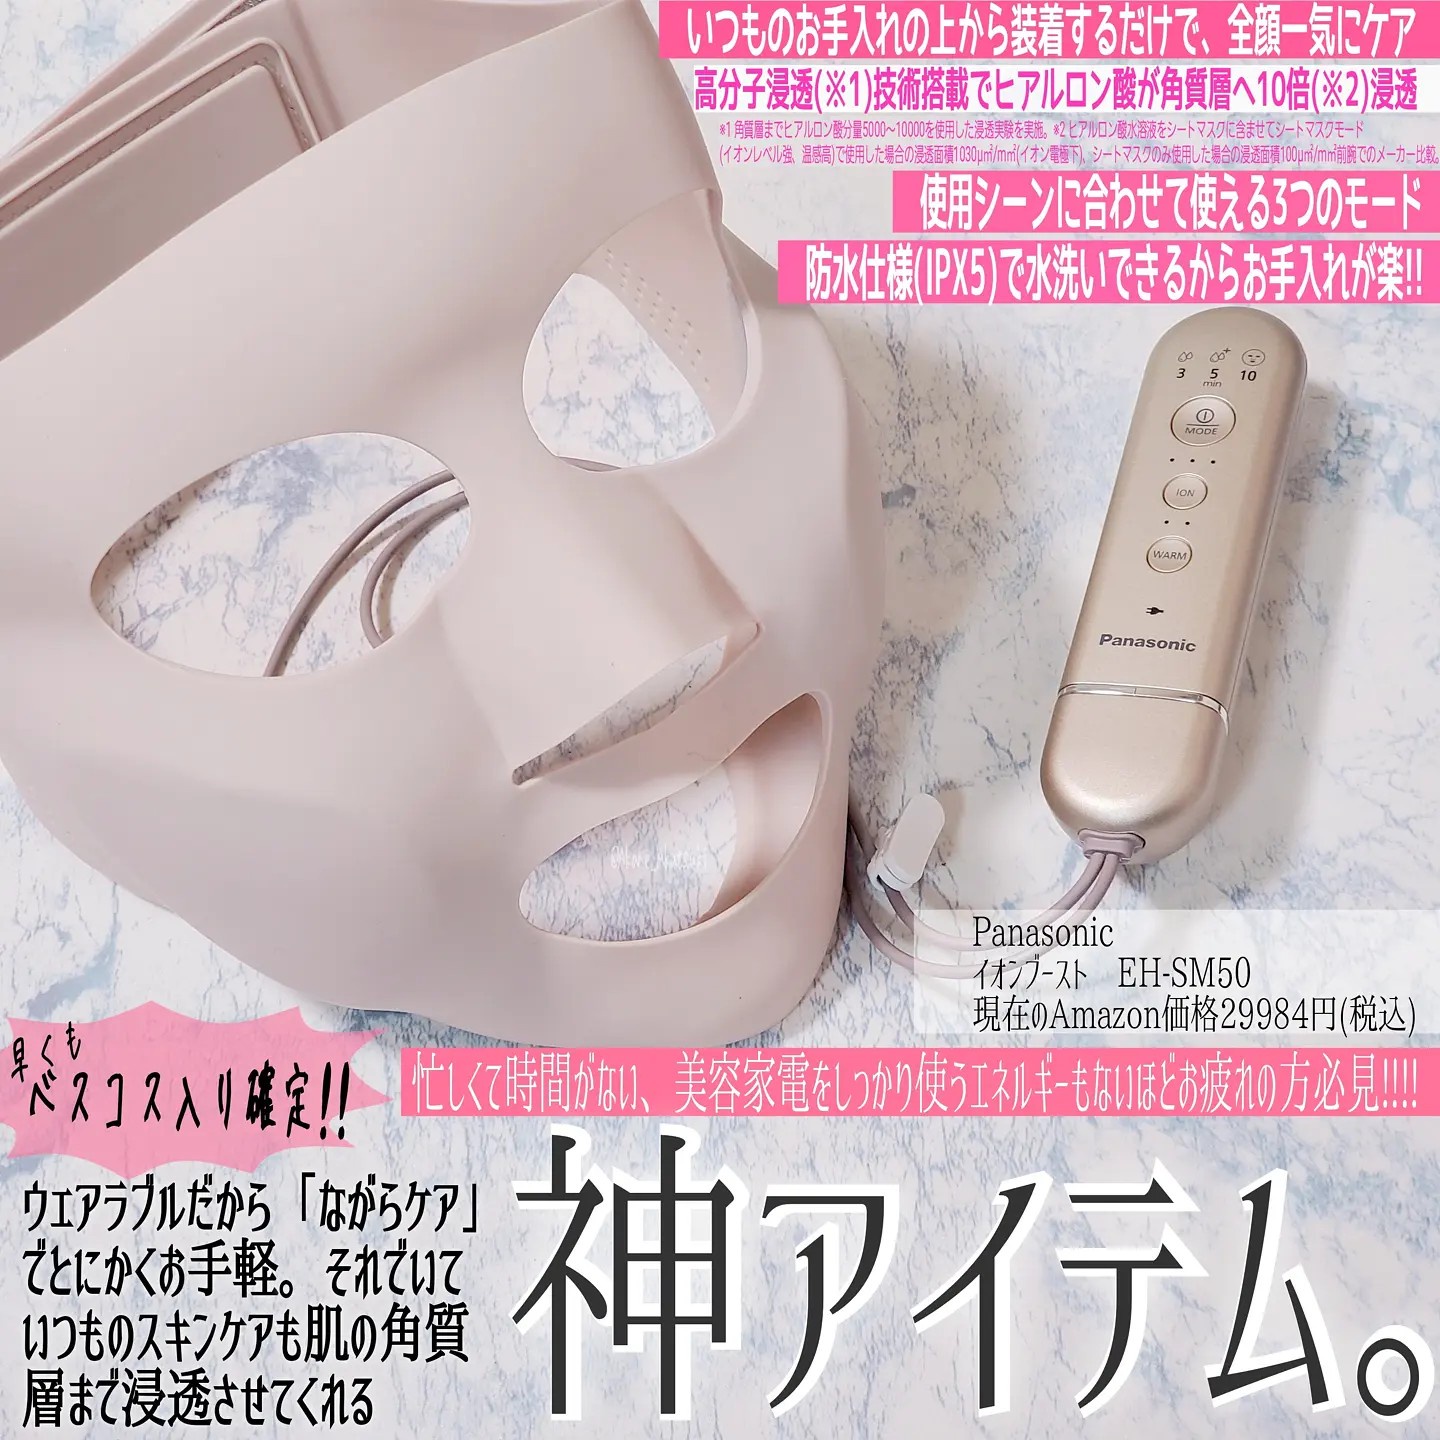 Panasonic / マスク型イオン美顔器 イオンブースト EH-SM50の公式商品 